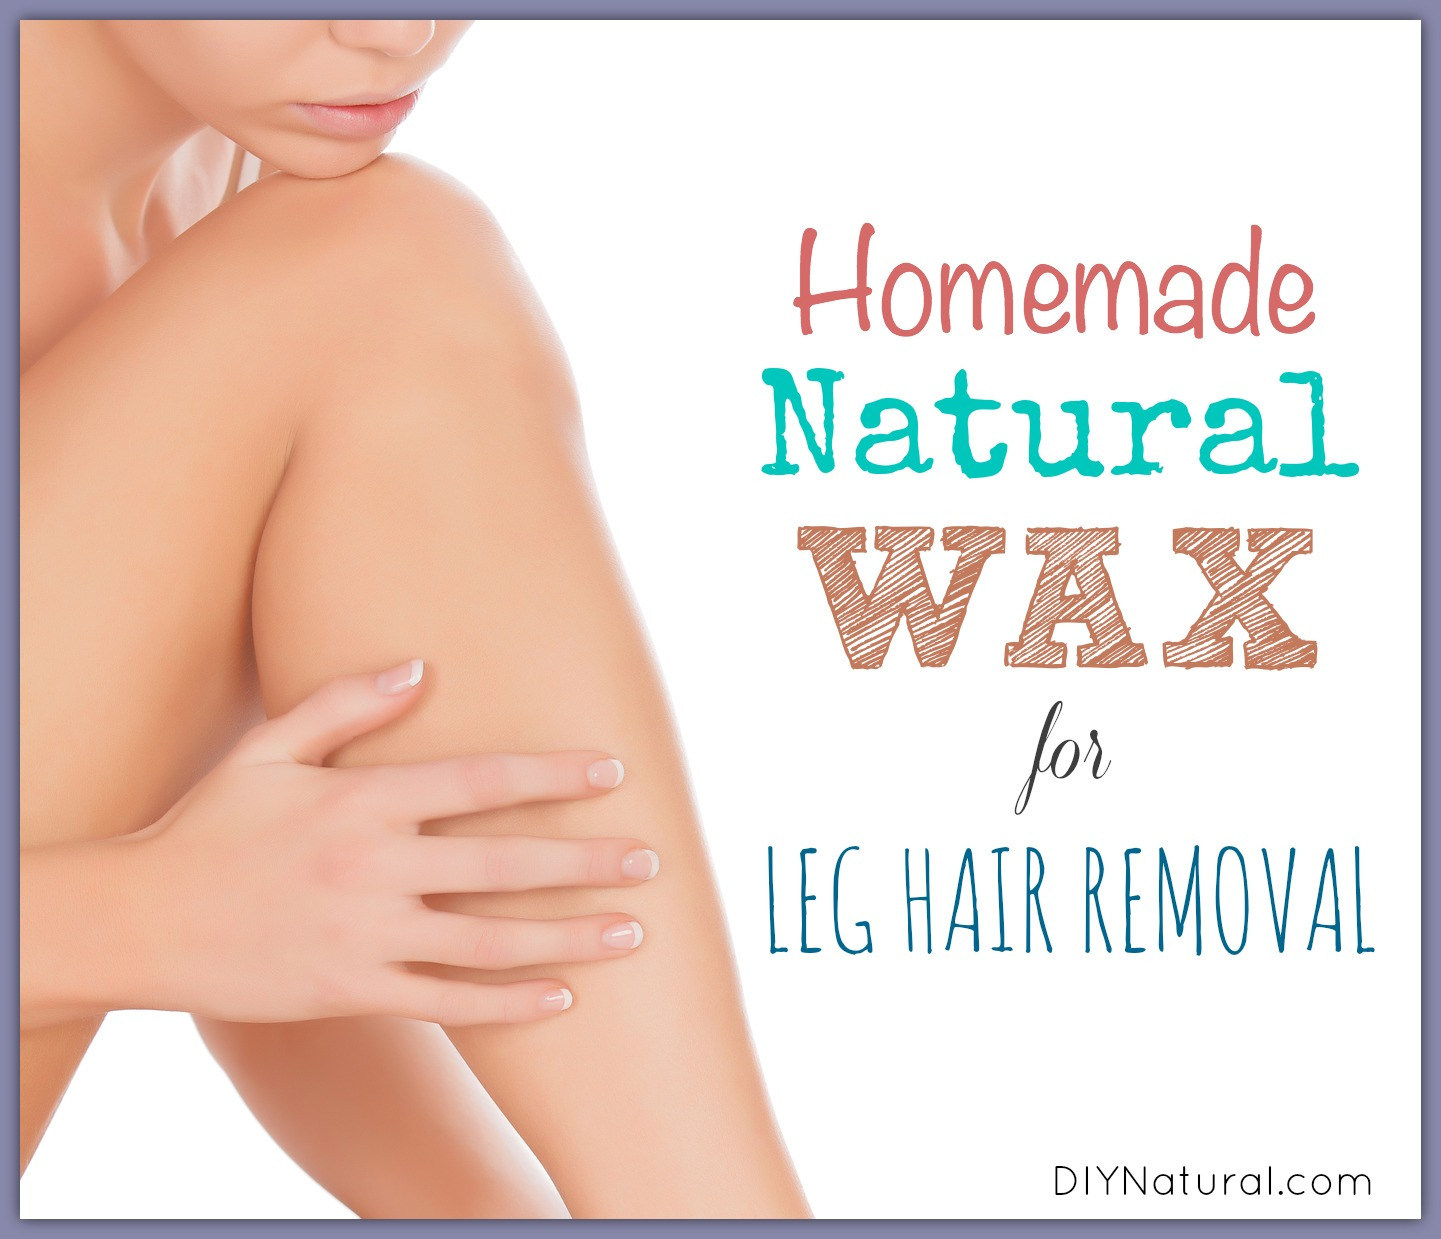 DIY Hair Wax Removal
 Sugar Wax Recipe Homemade Wax for Legs & Natural Leg Hair